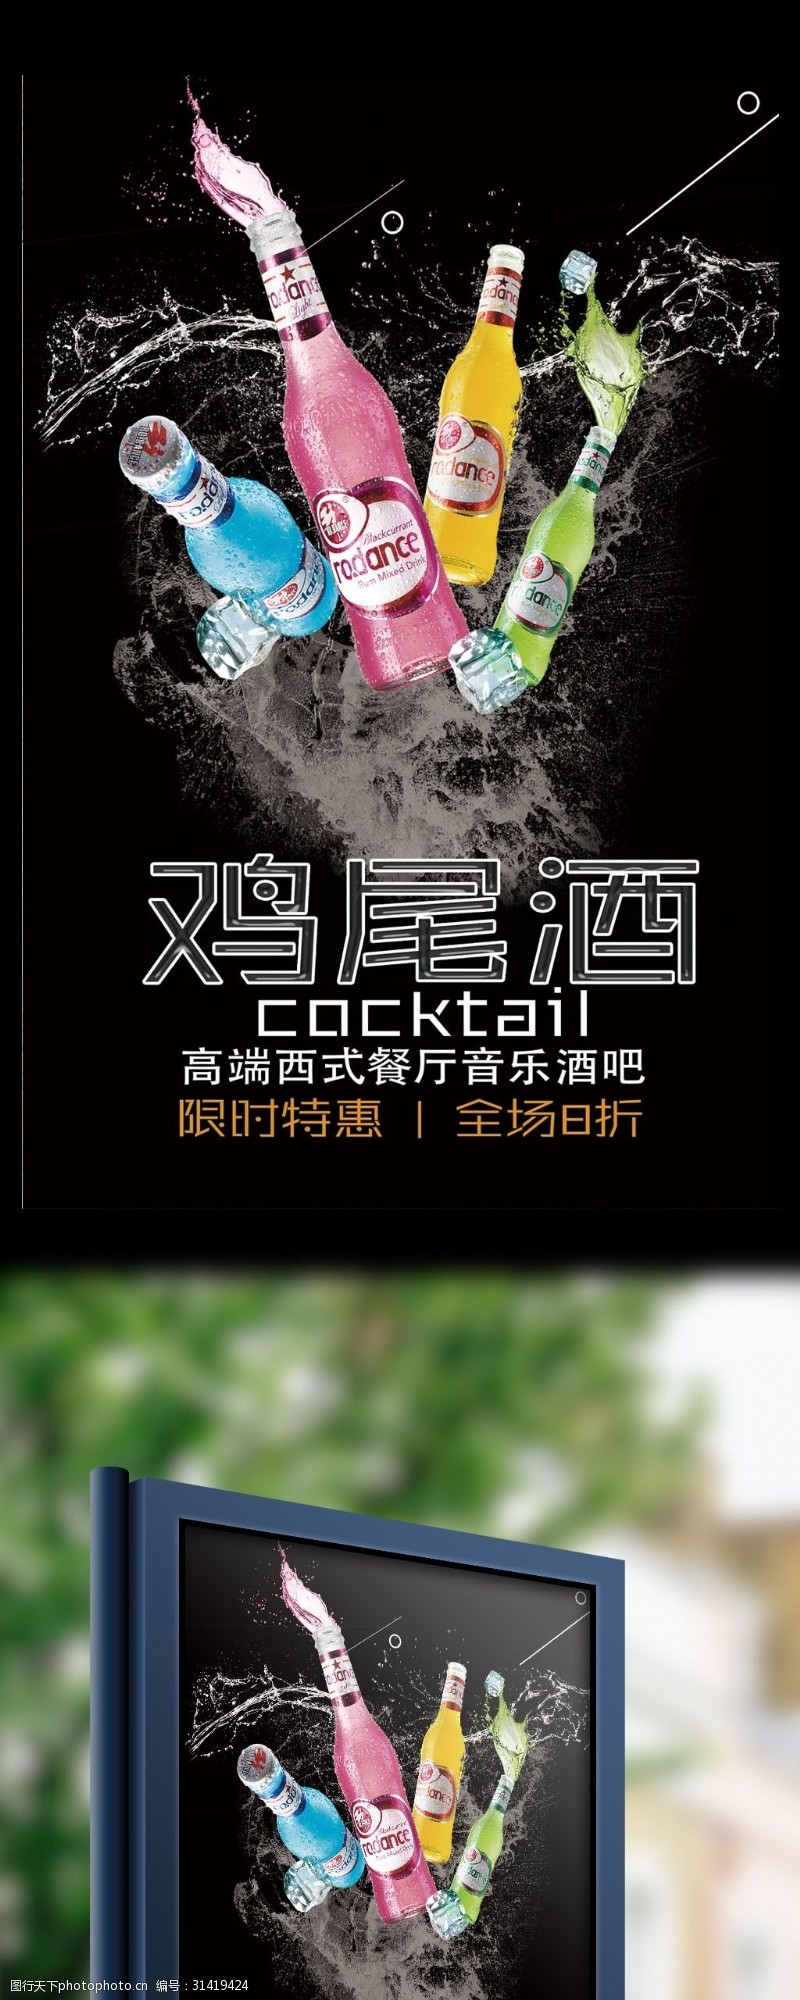 载体材料黑底鸡尾酒宣传海报设计